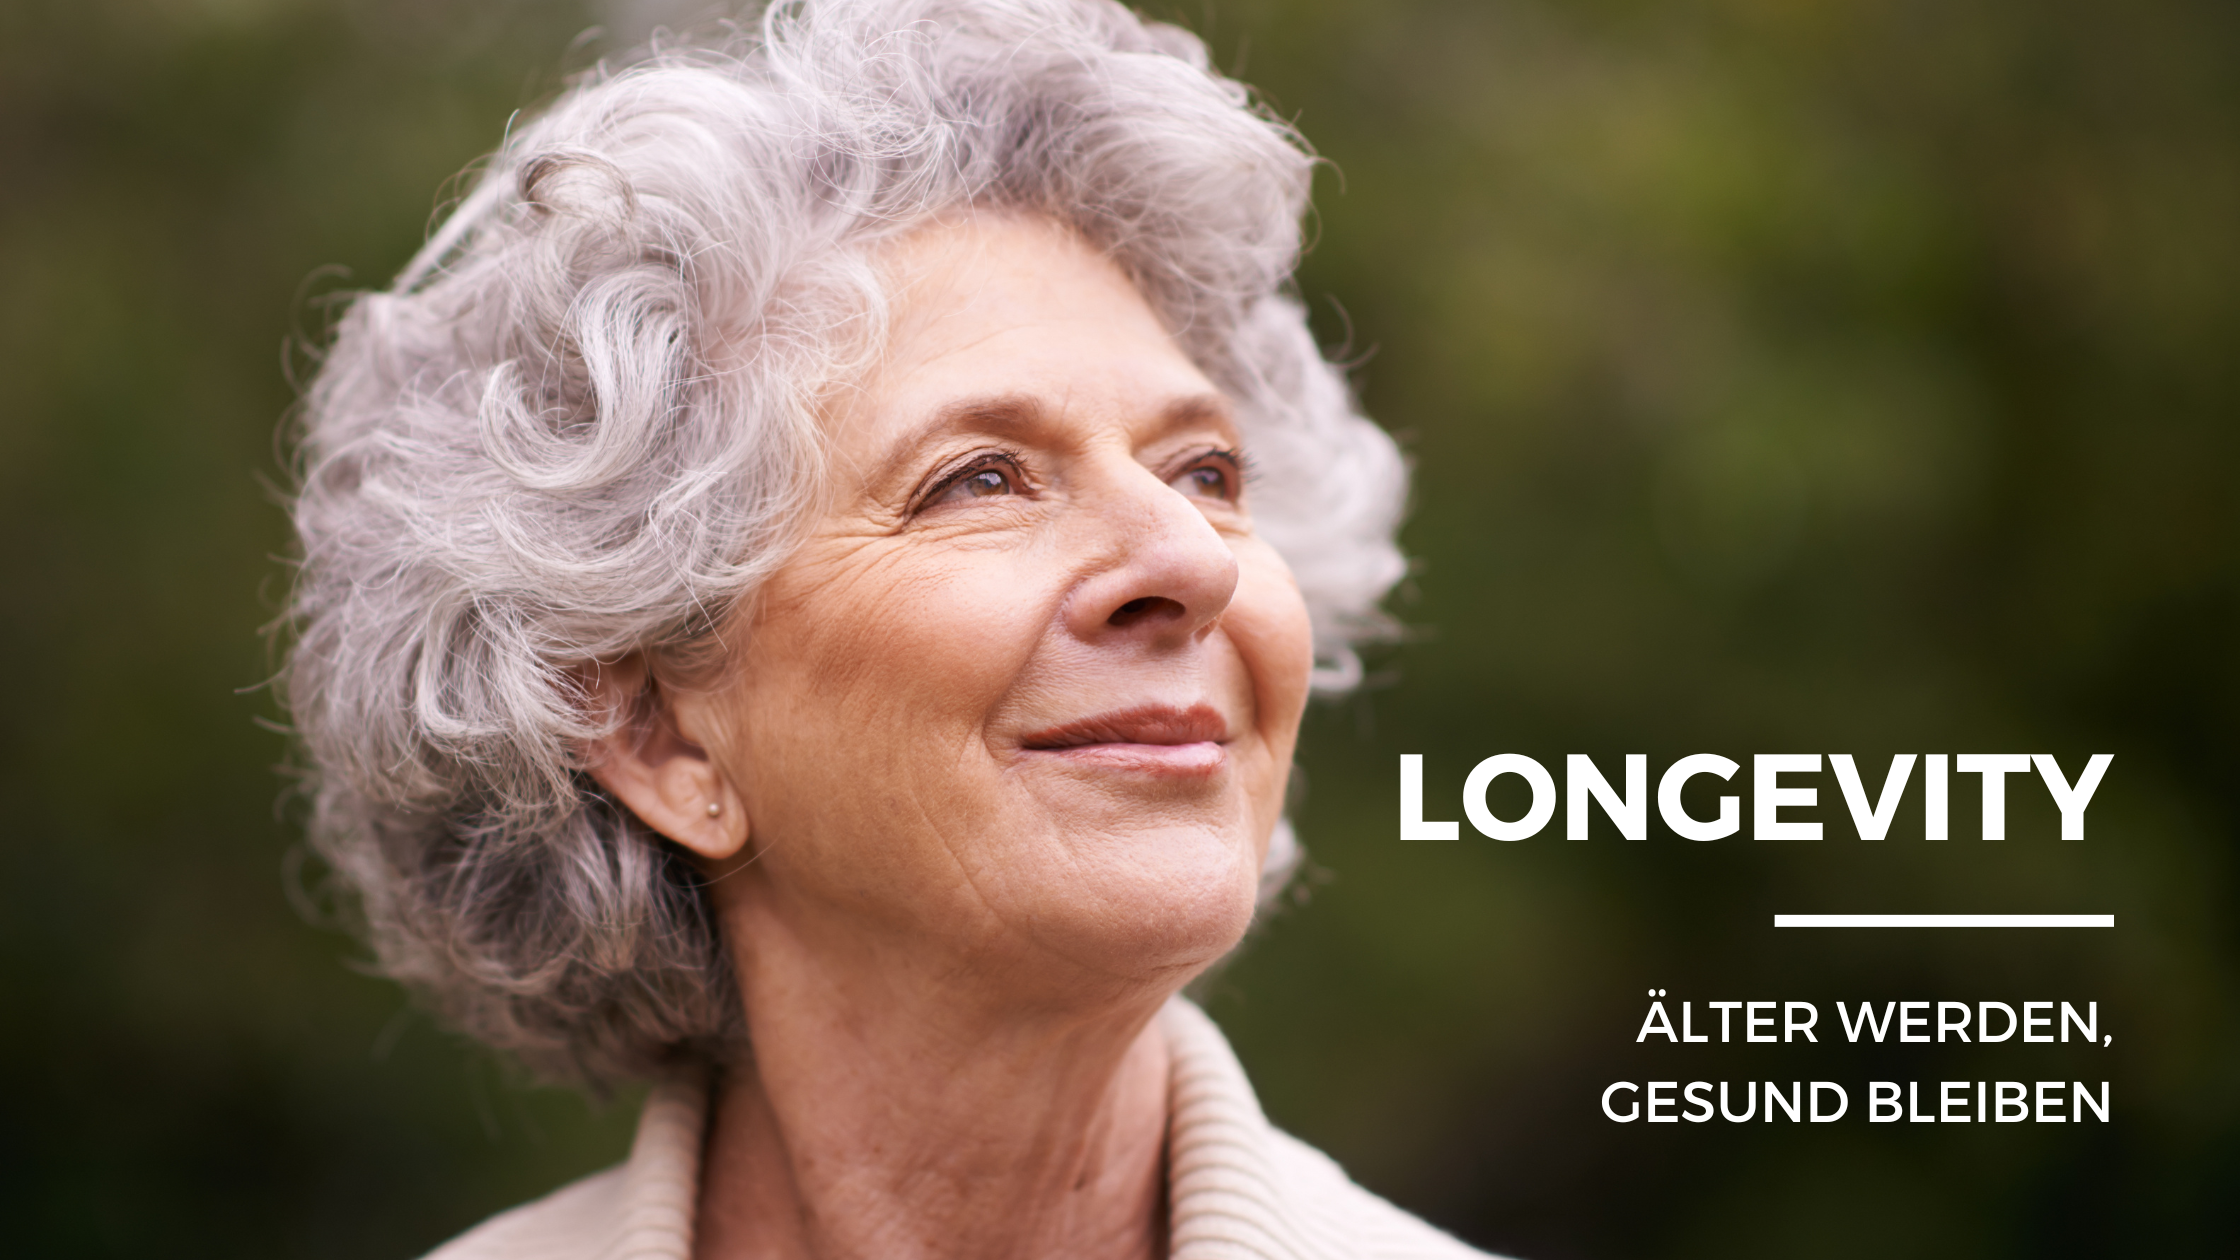 Mehr über den Artikel erfahren Longevity: Älter werden, gesund bleiben